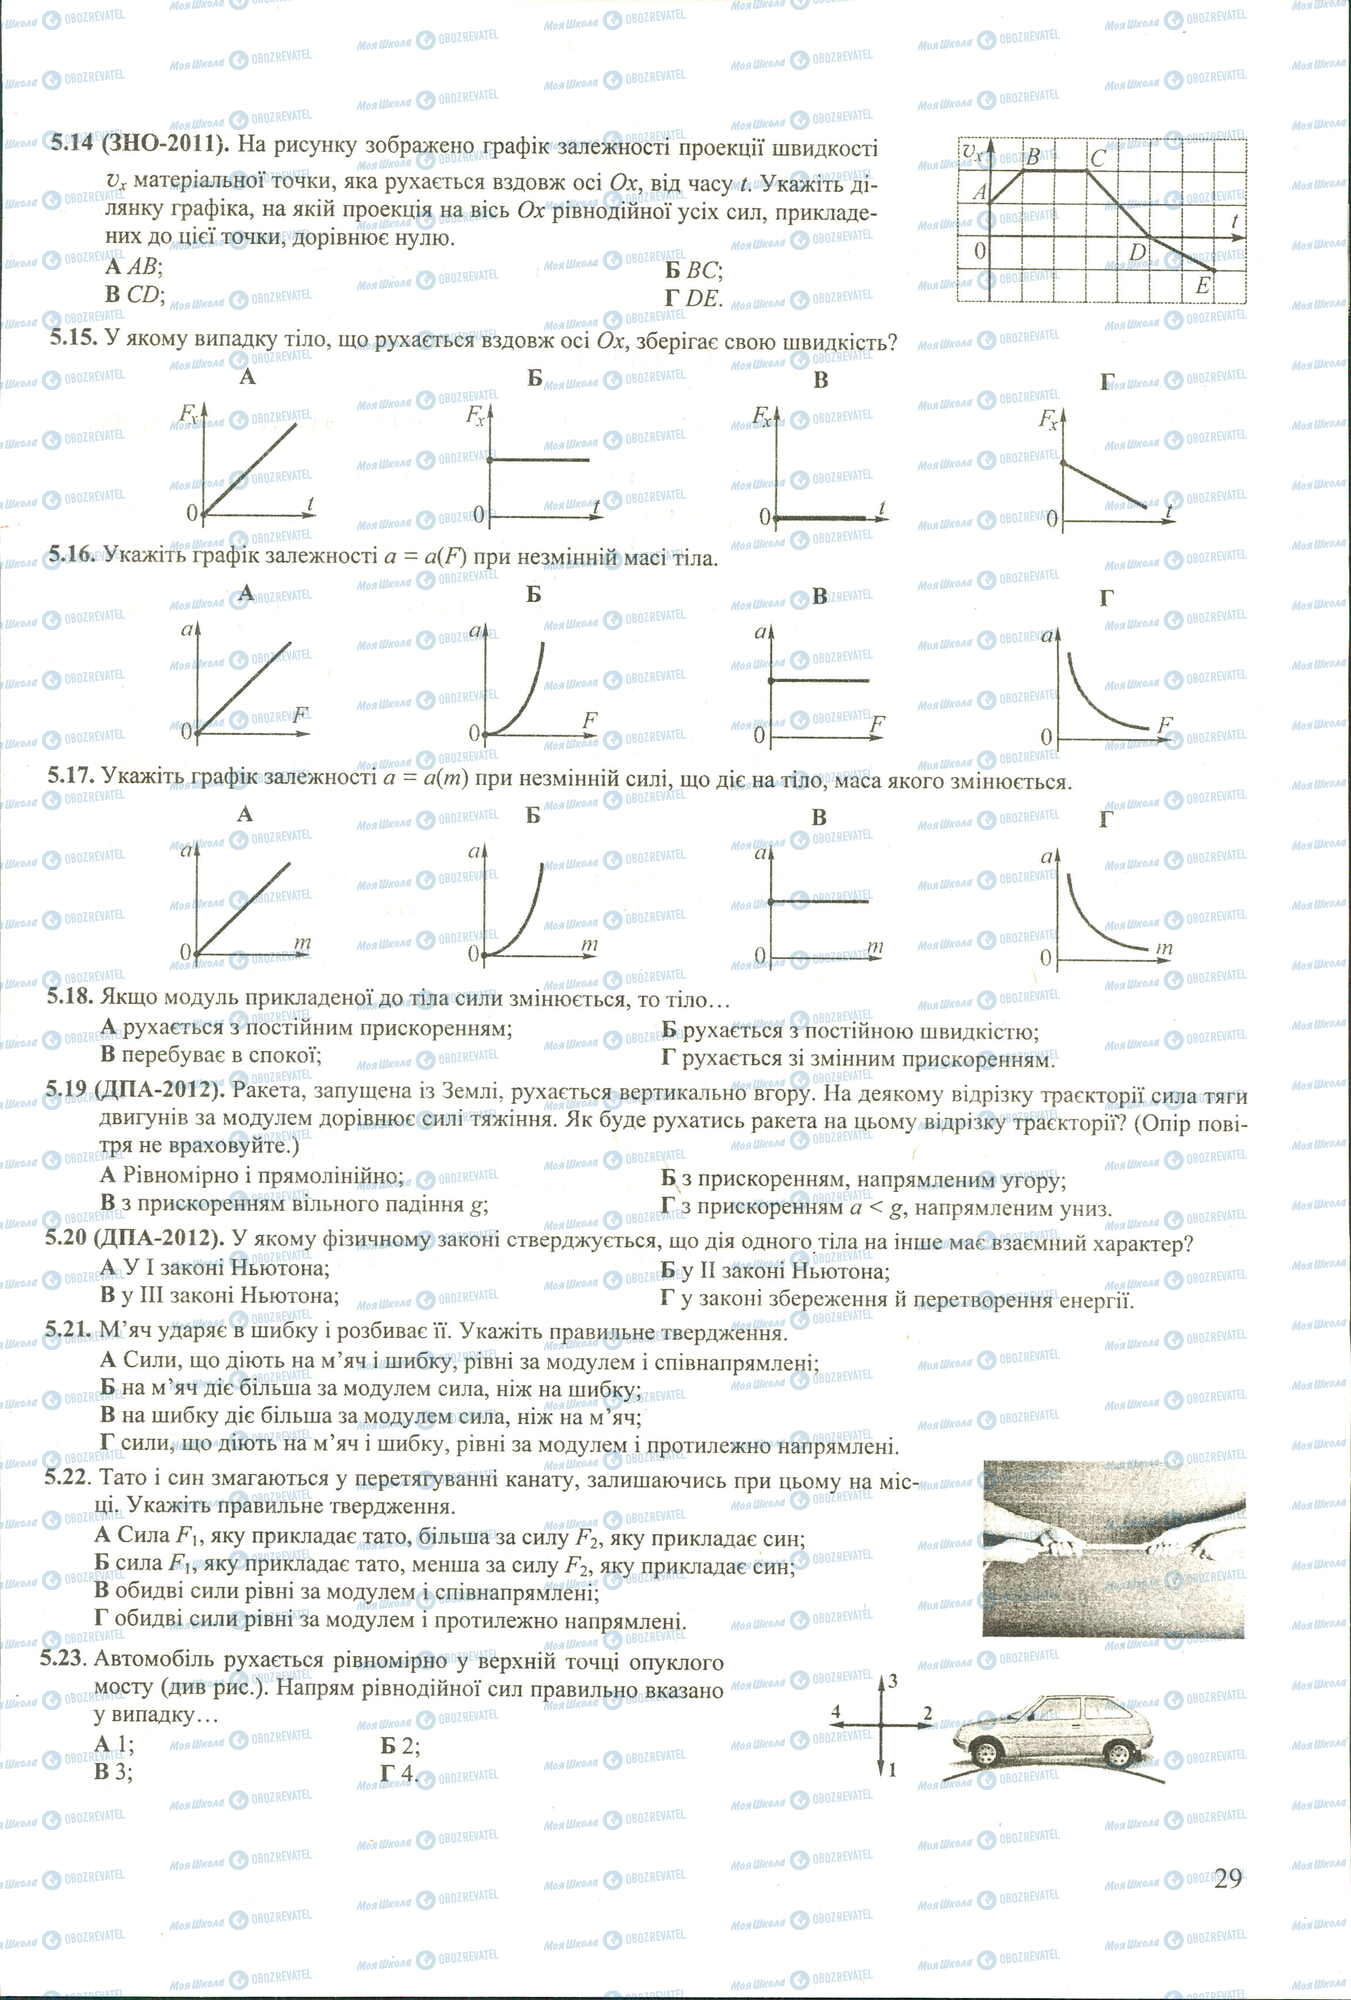 ЗНО Физика 11 класс страница 14-23